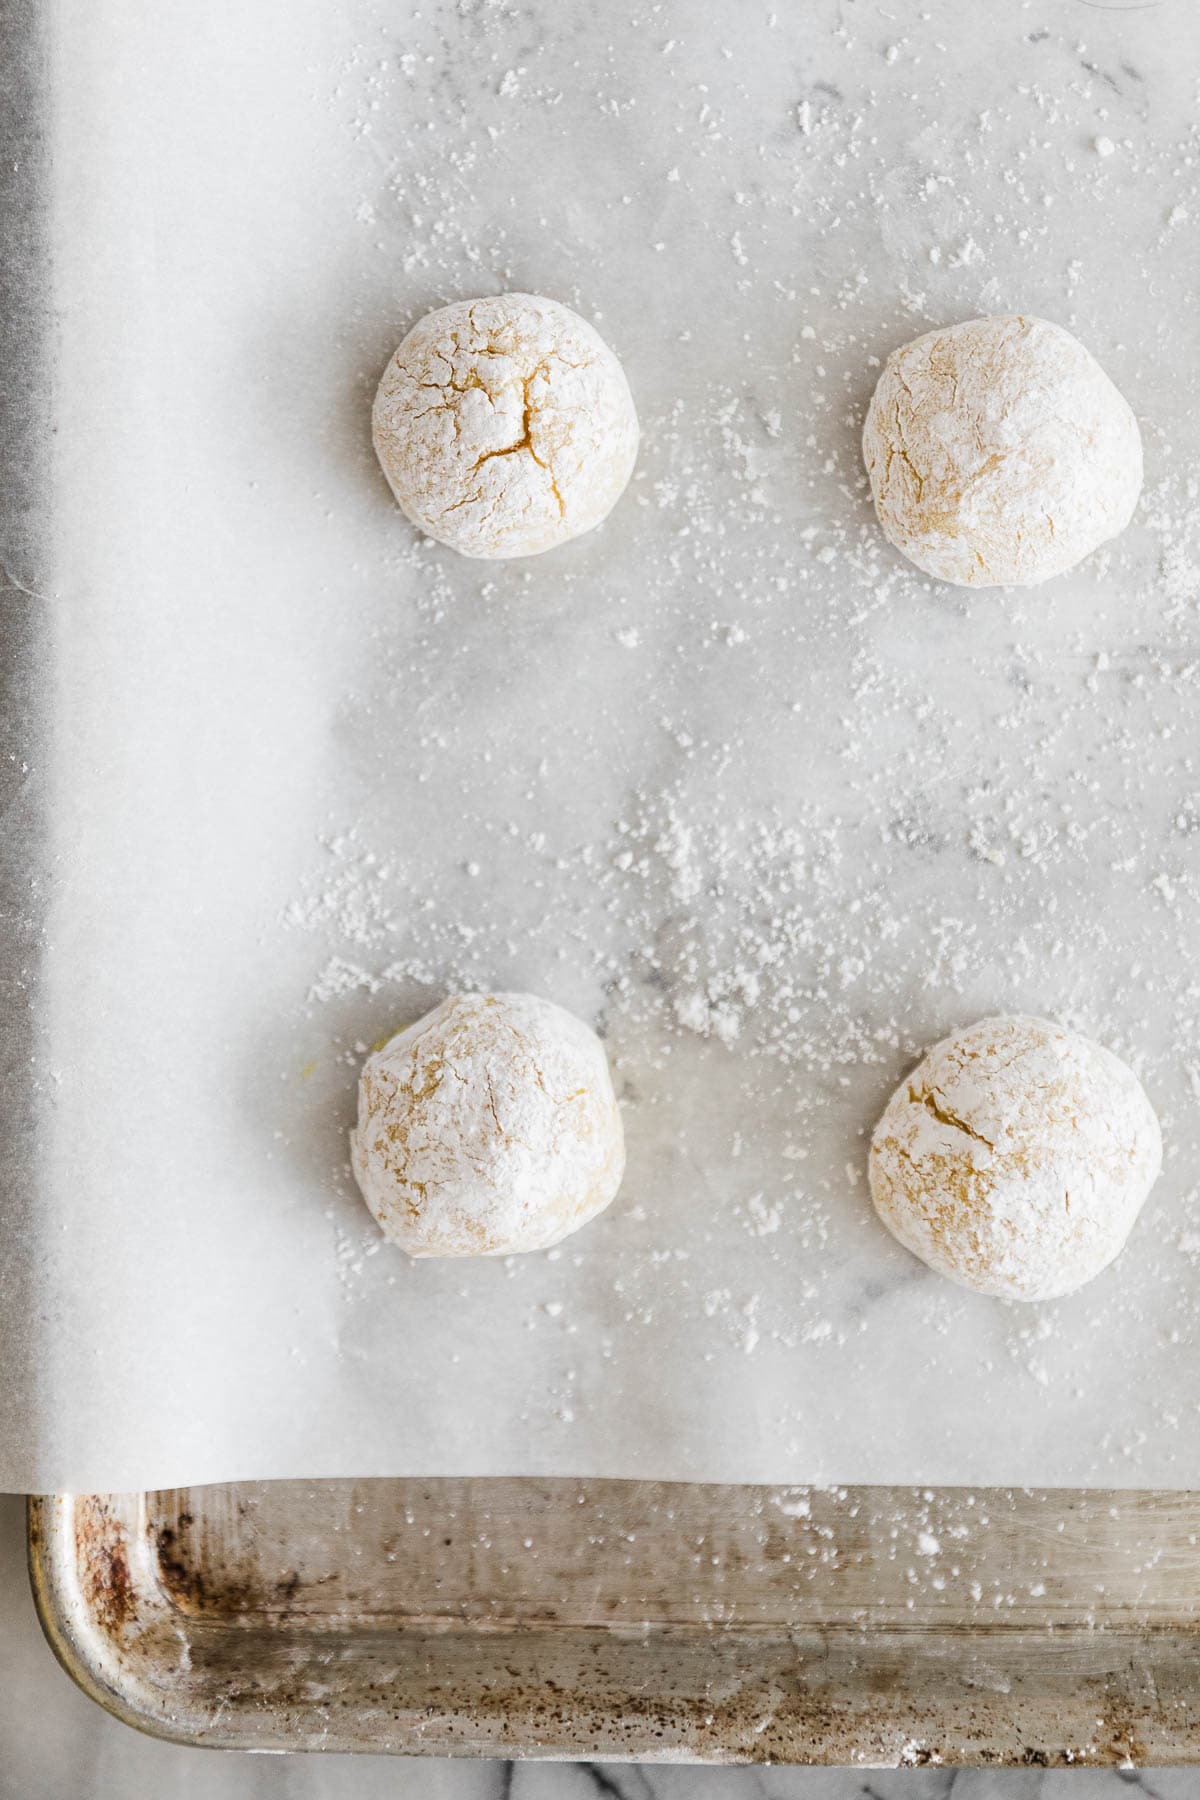 Four lemon cookie dough balls on baking sheet lined on parchment paper. 